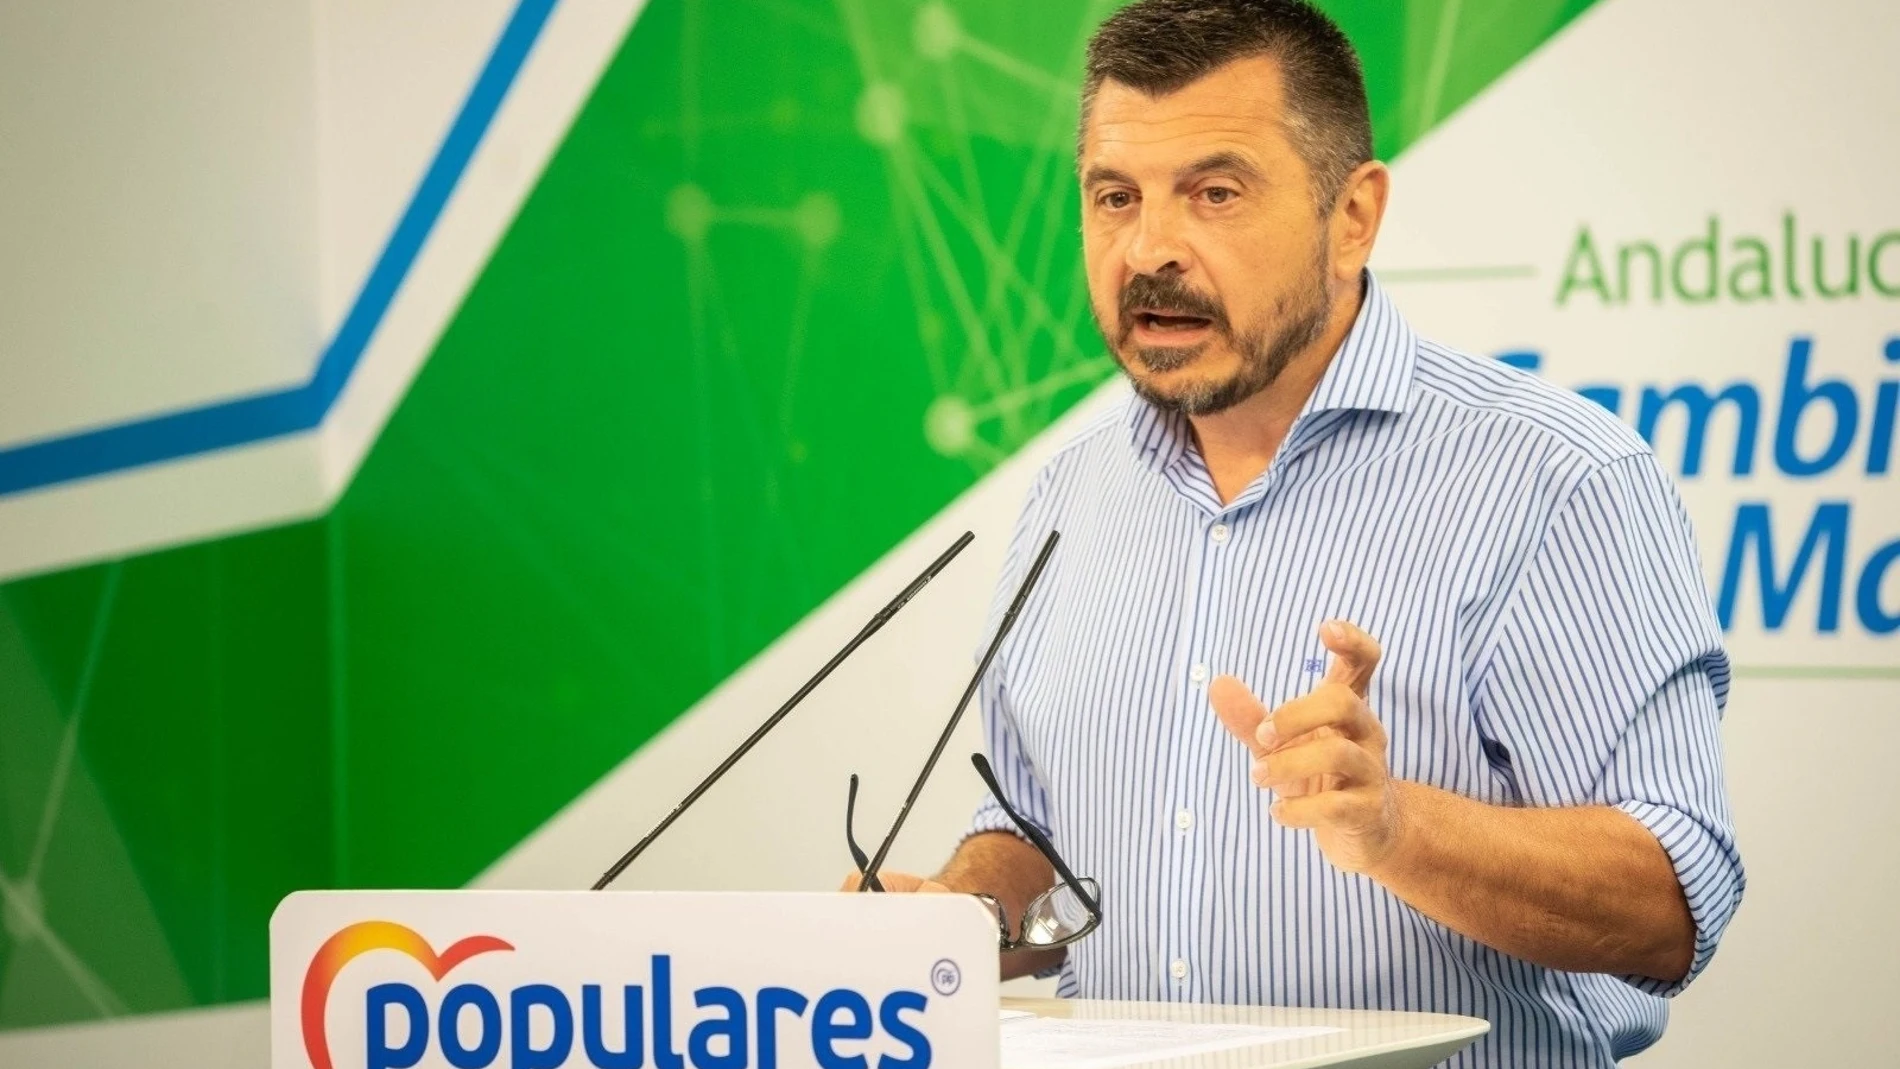 Para Toni Martín, el “castigo” a Andalucía marcará al PSOE y a Montero para “el resto de su vida política”.